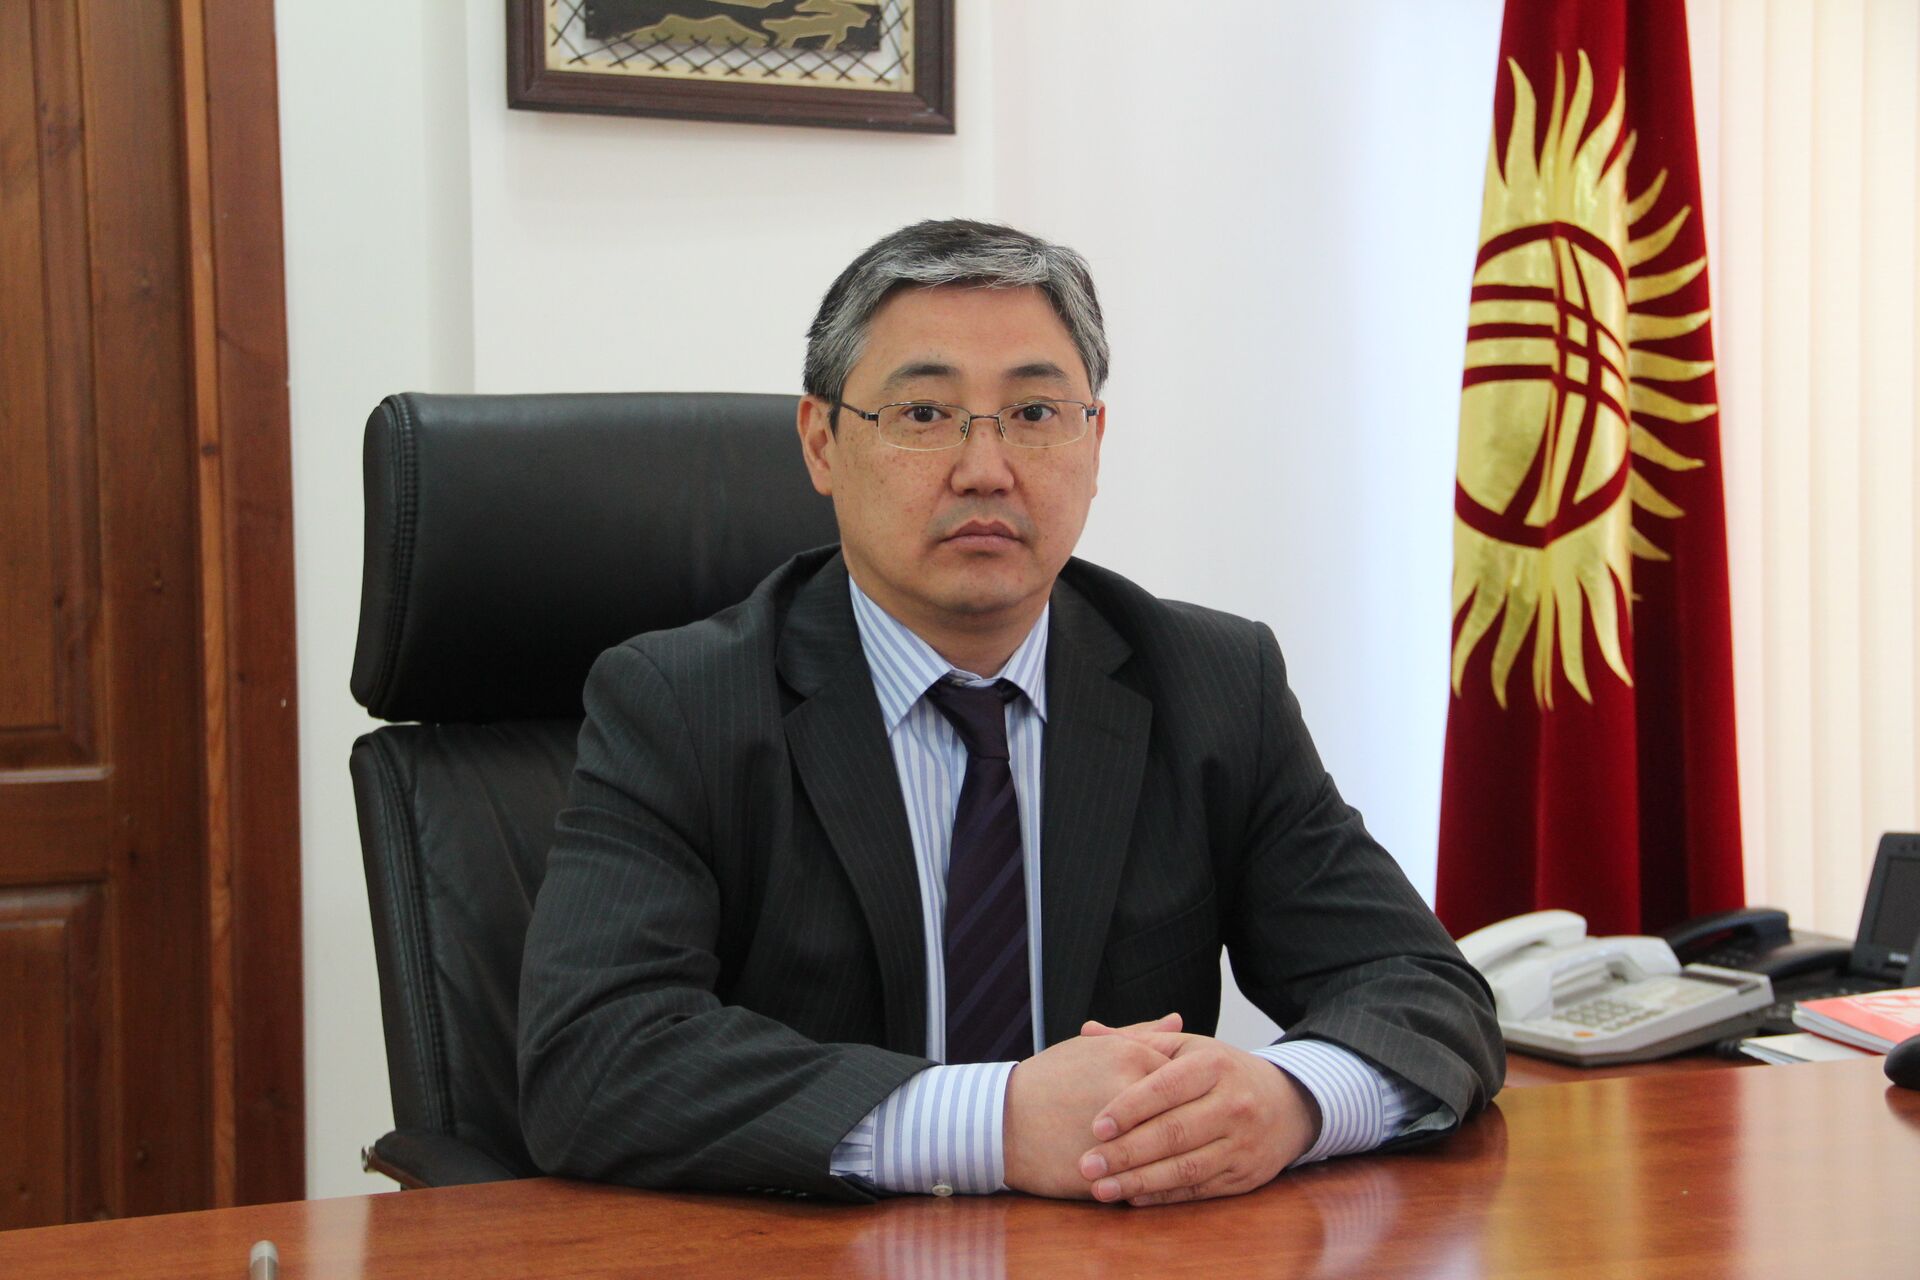 Надоело считать и. о. мэра Бишкека? Мы сделали это за вас — список за 5 месяцев - Sputnik Кыргызстан, 1920, 09.02.2021